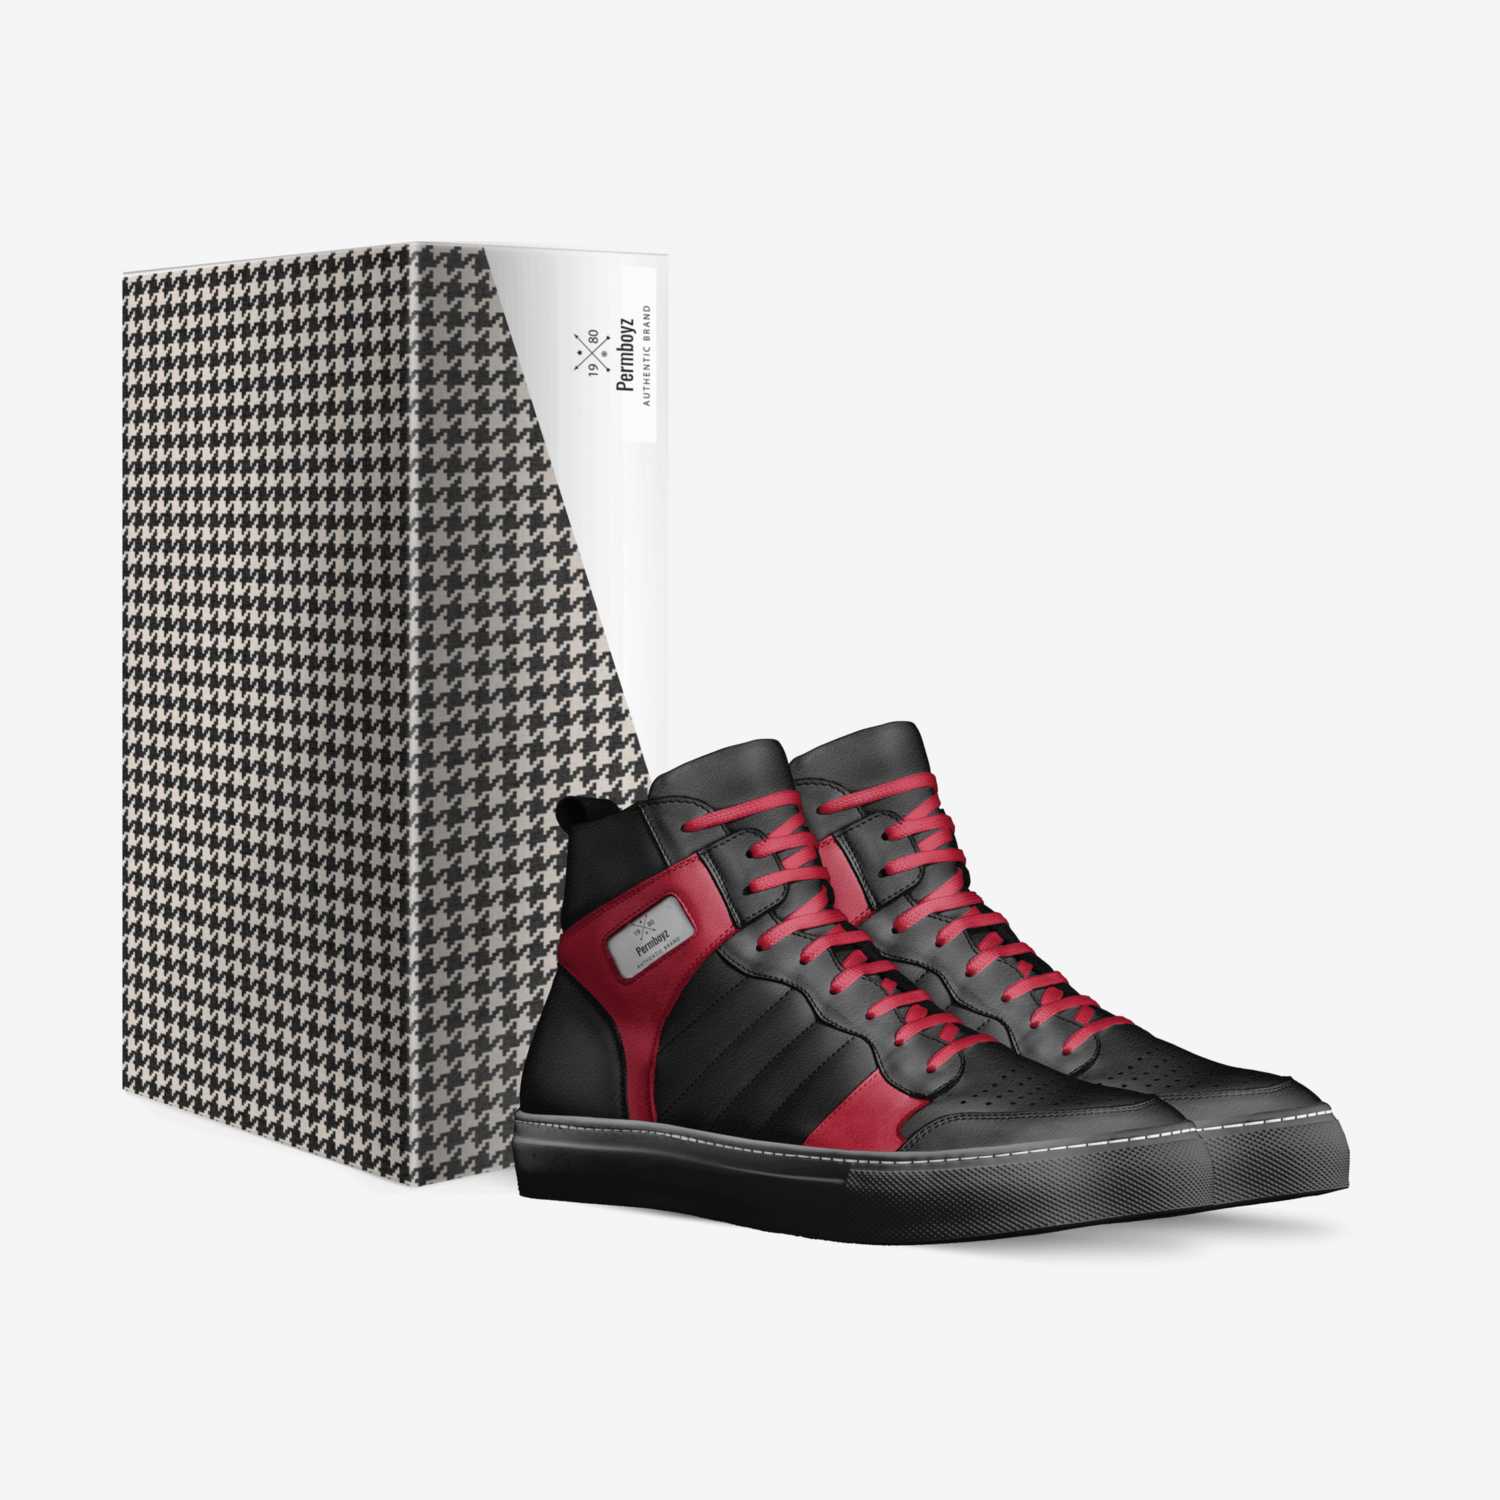 Permboyz custom made in Italy shoes by Joe Rock | Box view